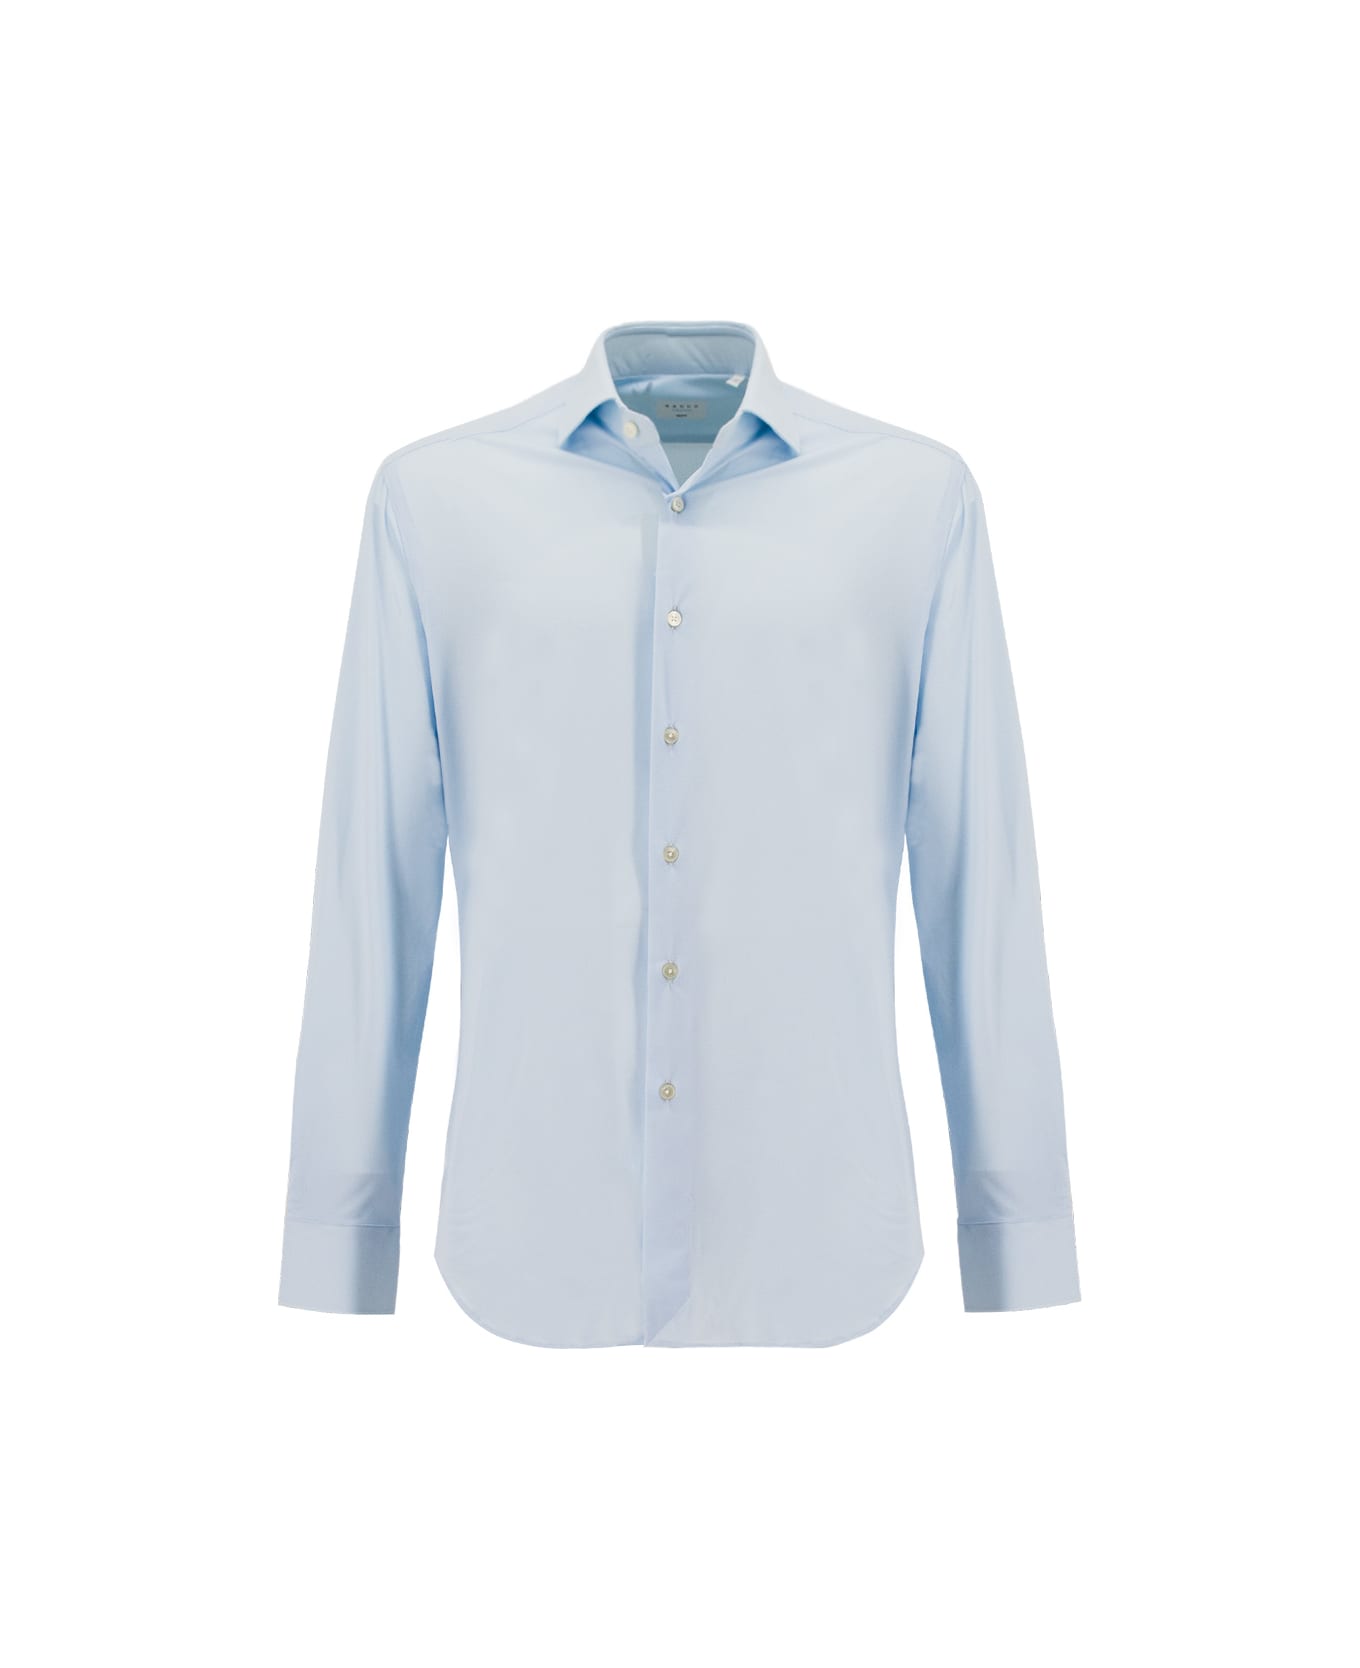 Xacus Shirt - LIGHT BLUE シャツ